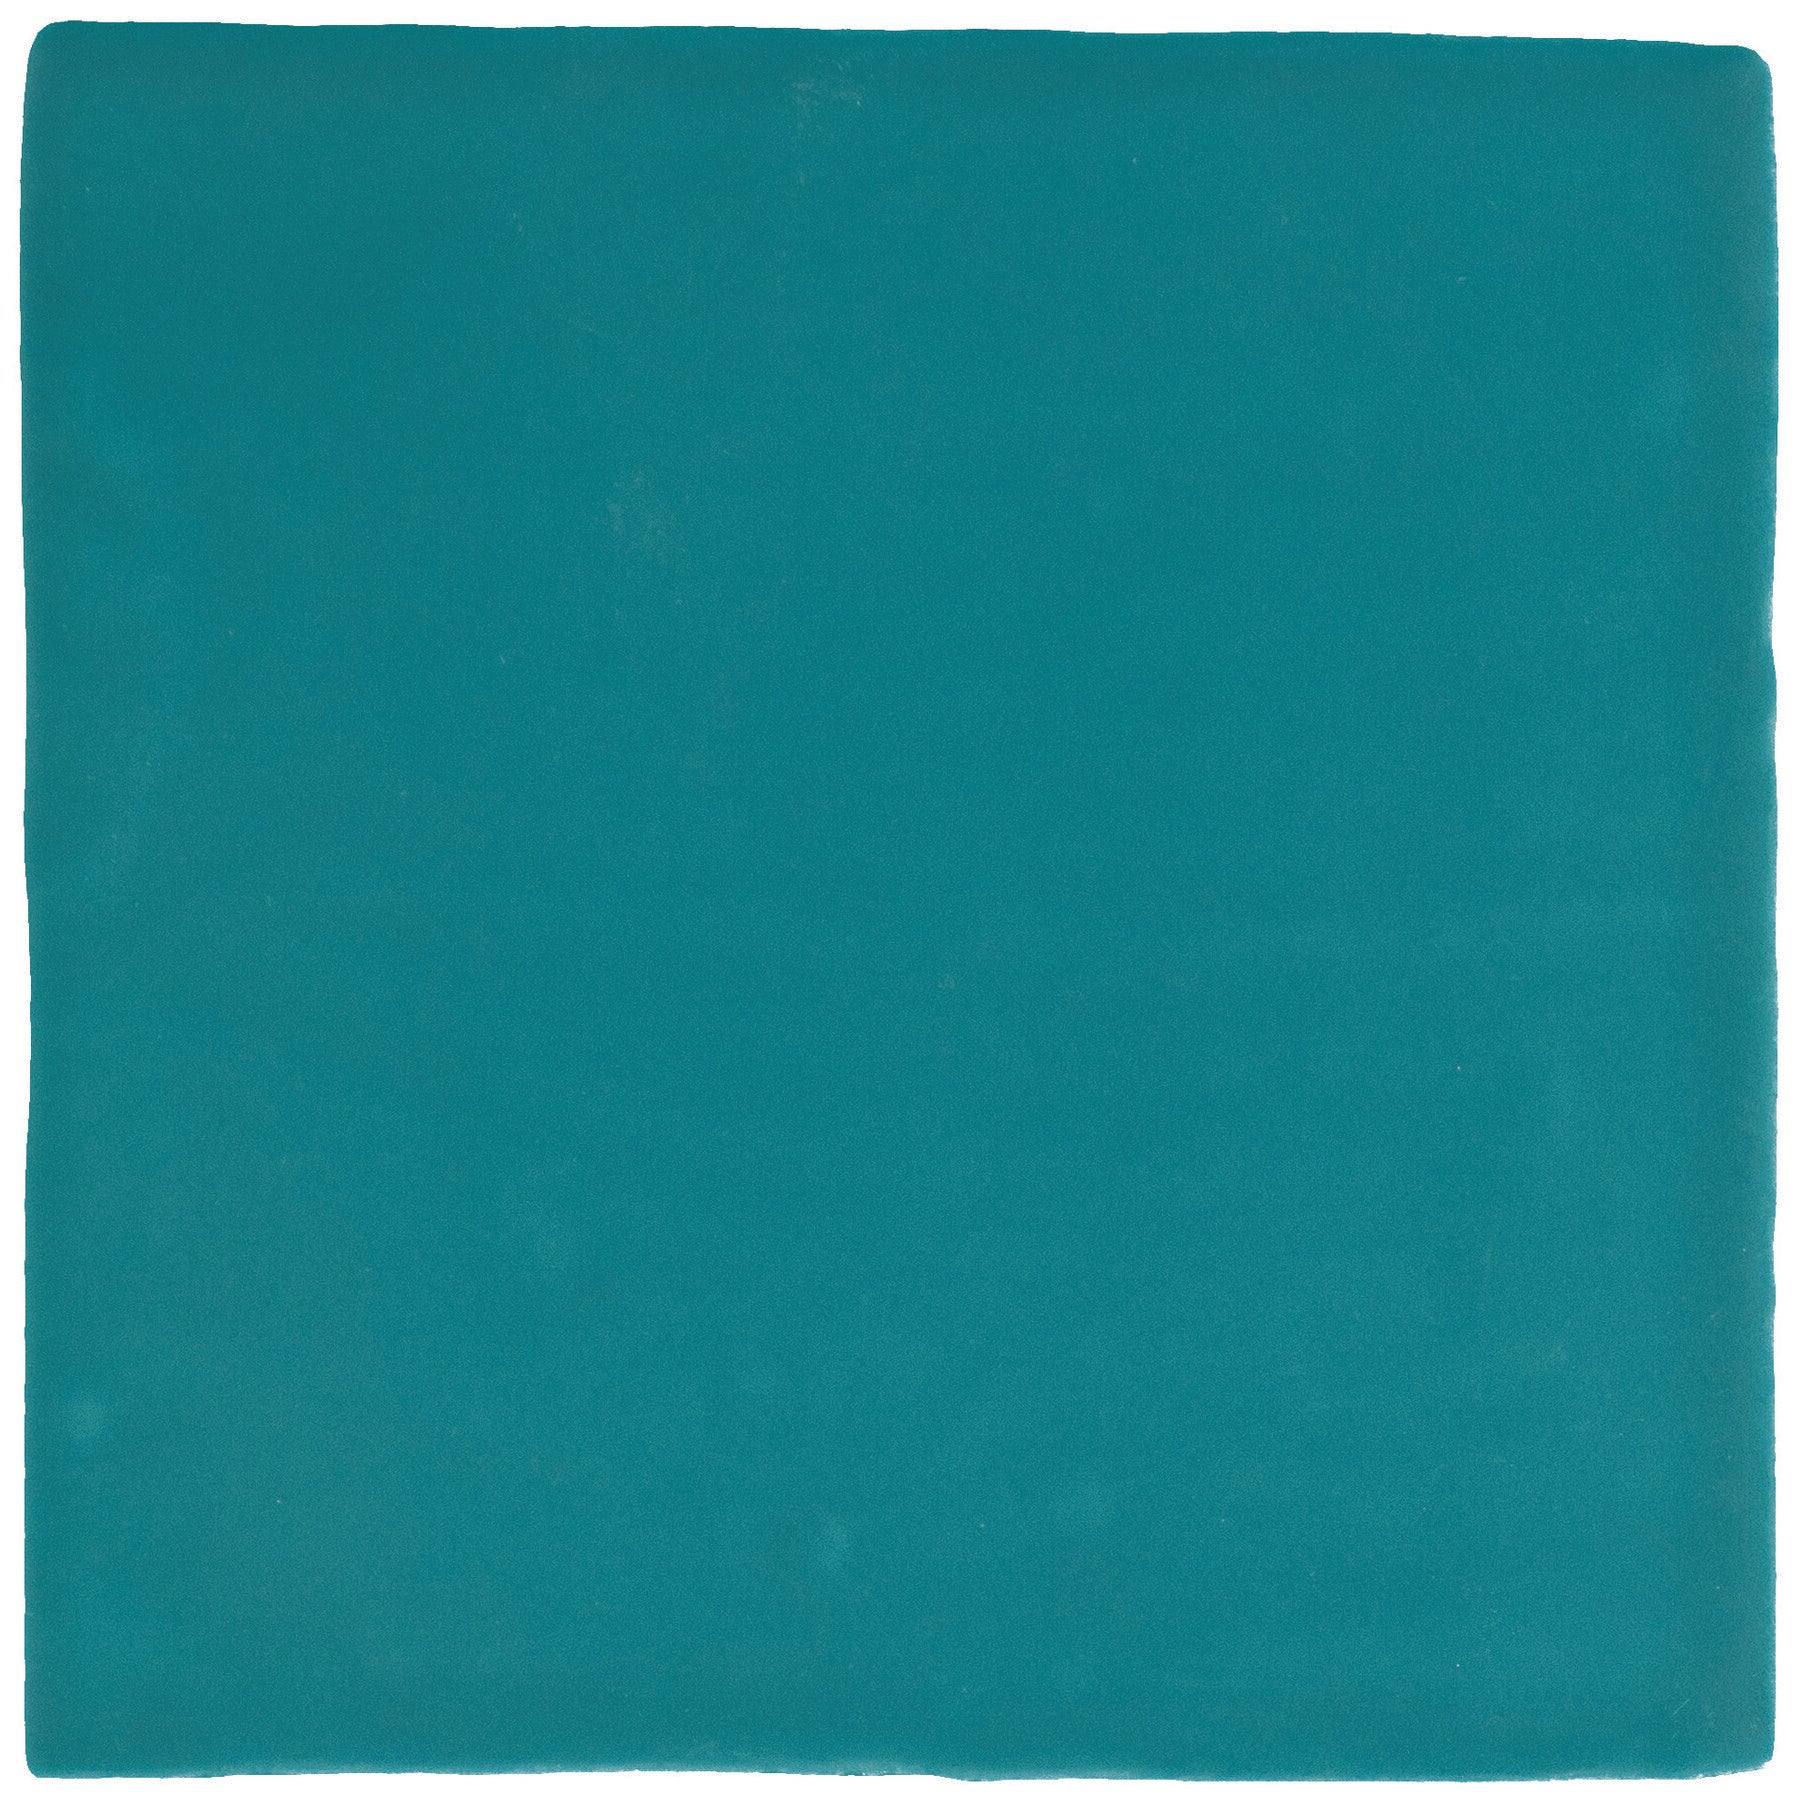 Daltile - Farrier - 5 in. x 5 in. Glazed Ceramic Wall Tile - Blue Roan